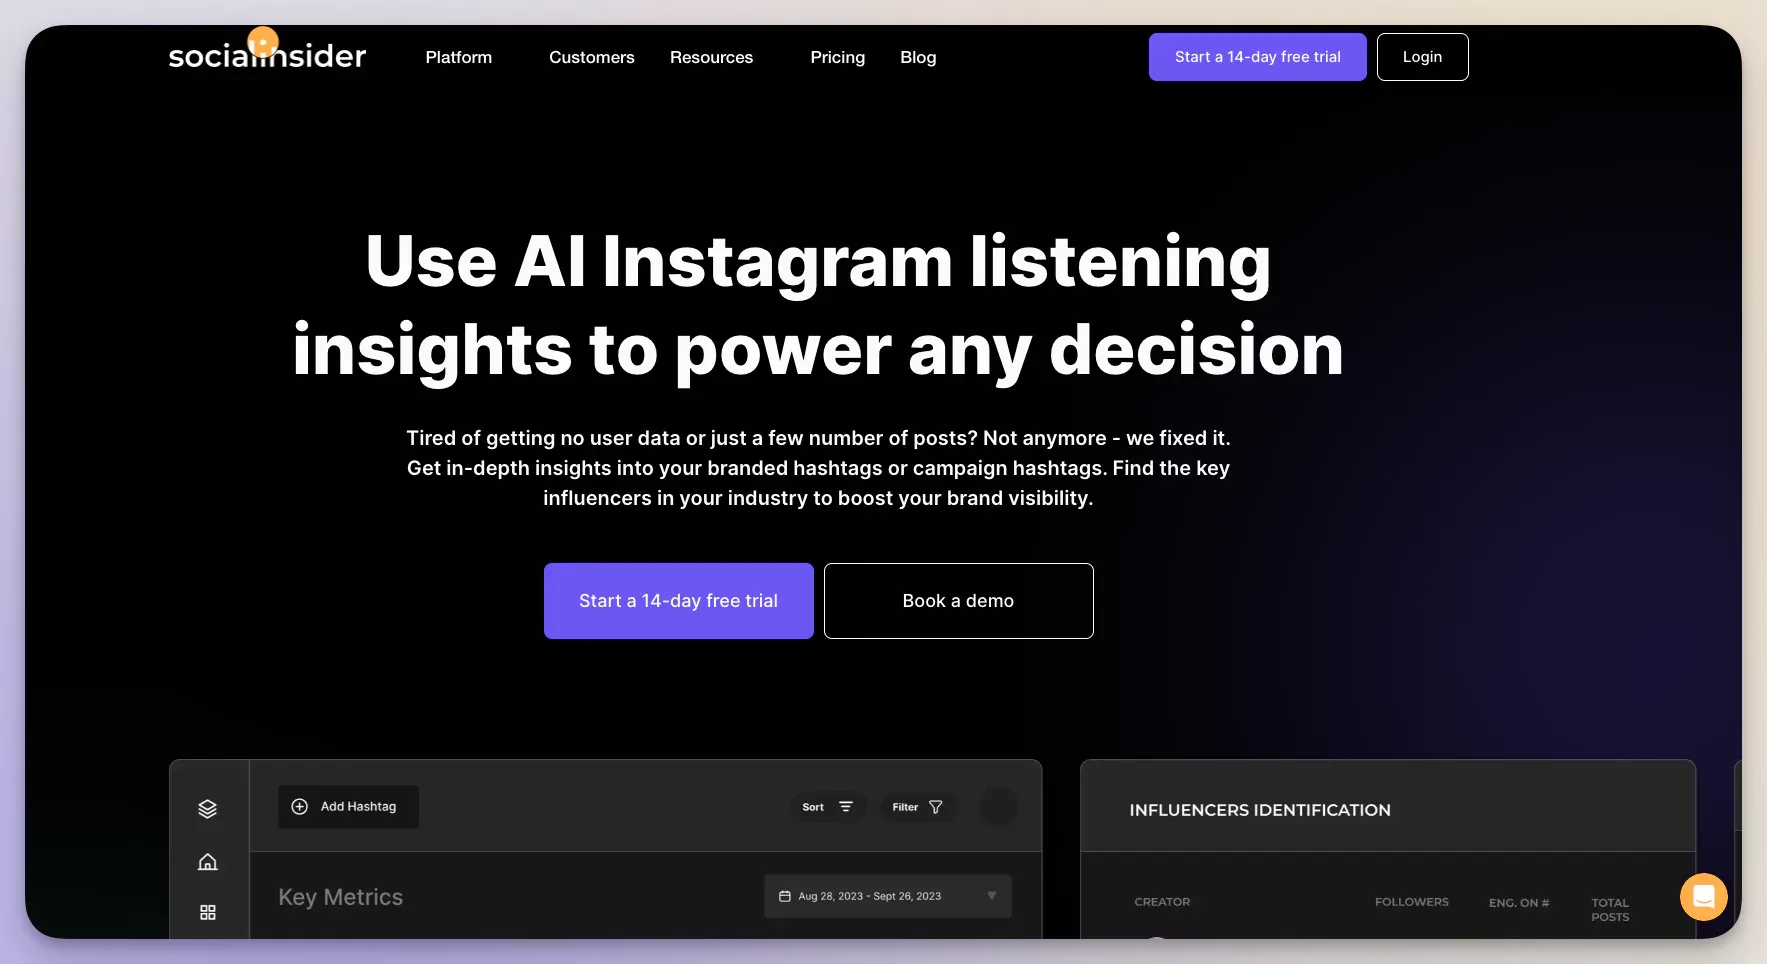 Socialinsider's Instagram listening tool